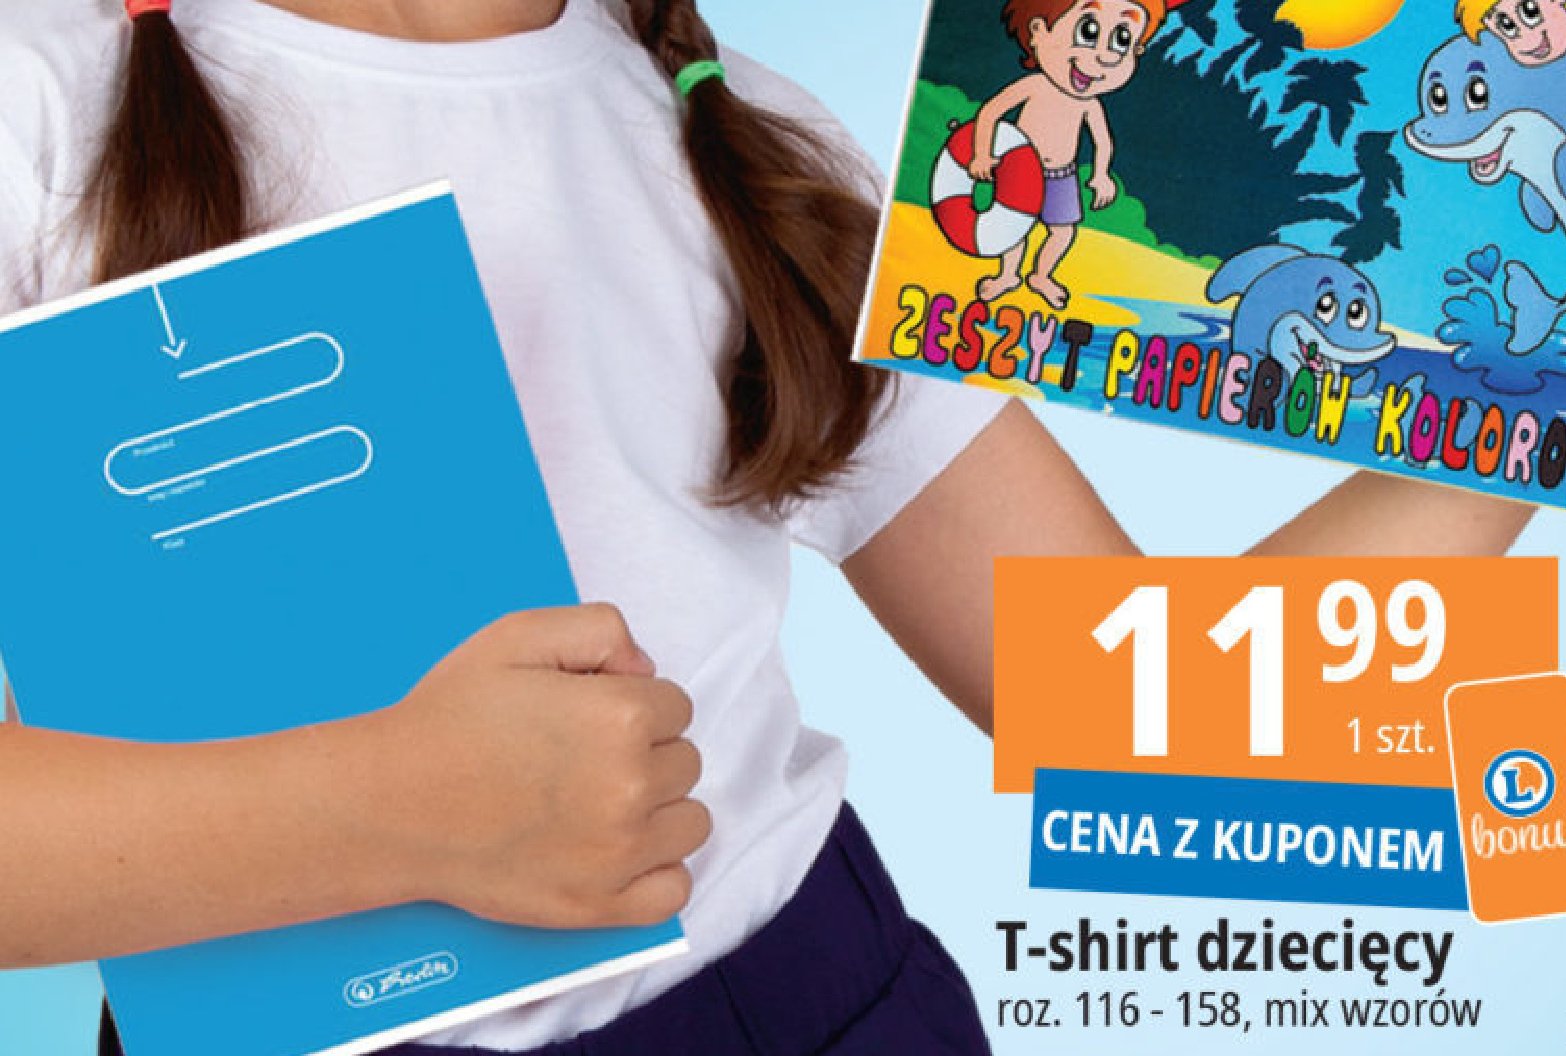 T-shirt dziecięcy rozm. 116-158 promocja